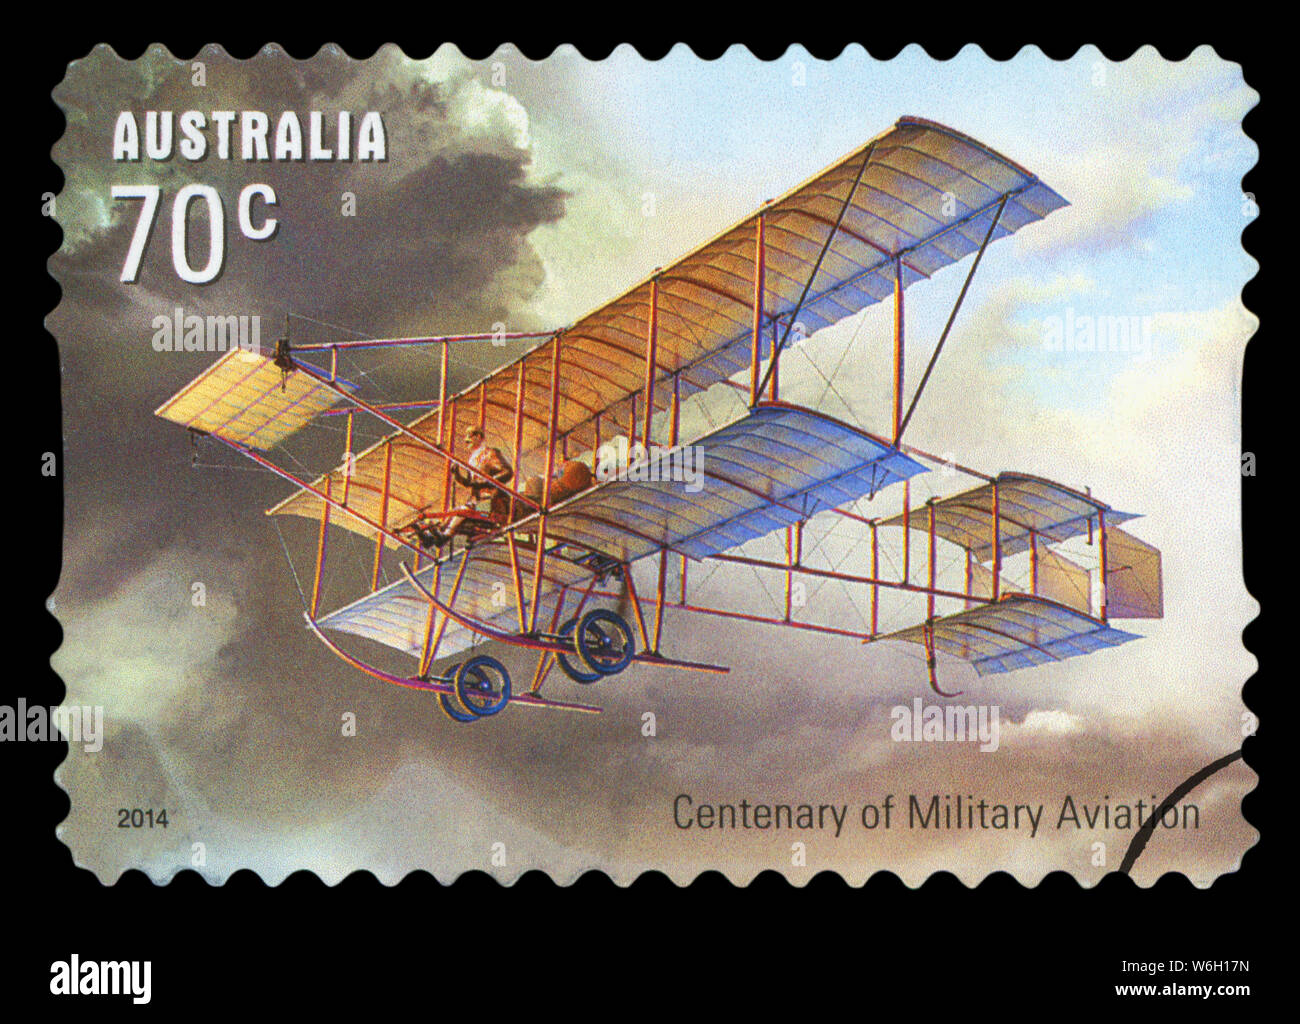 L'AUSTRALIE - circa 2014 : timbre imprimé en Australie montre les Aéronefs historique, centenaire de l'Aviation militaire series, vers 2014. Banque D'Images